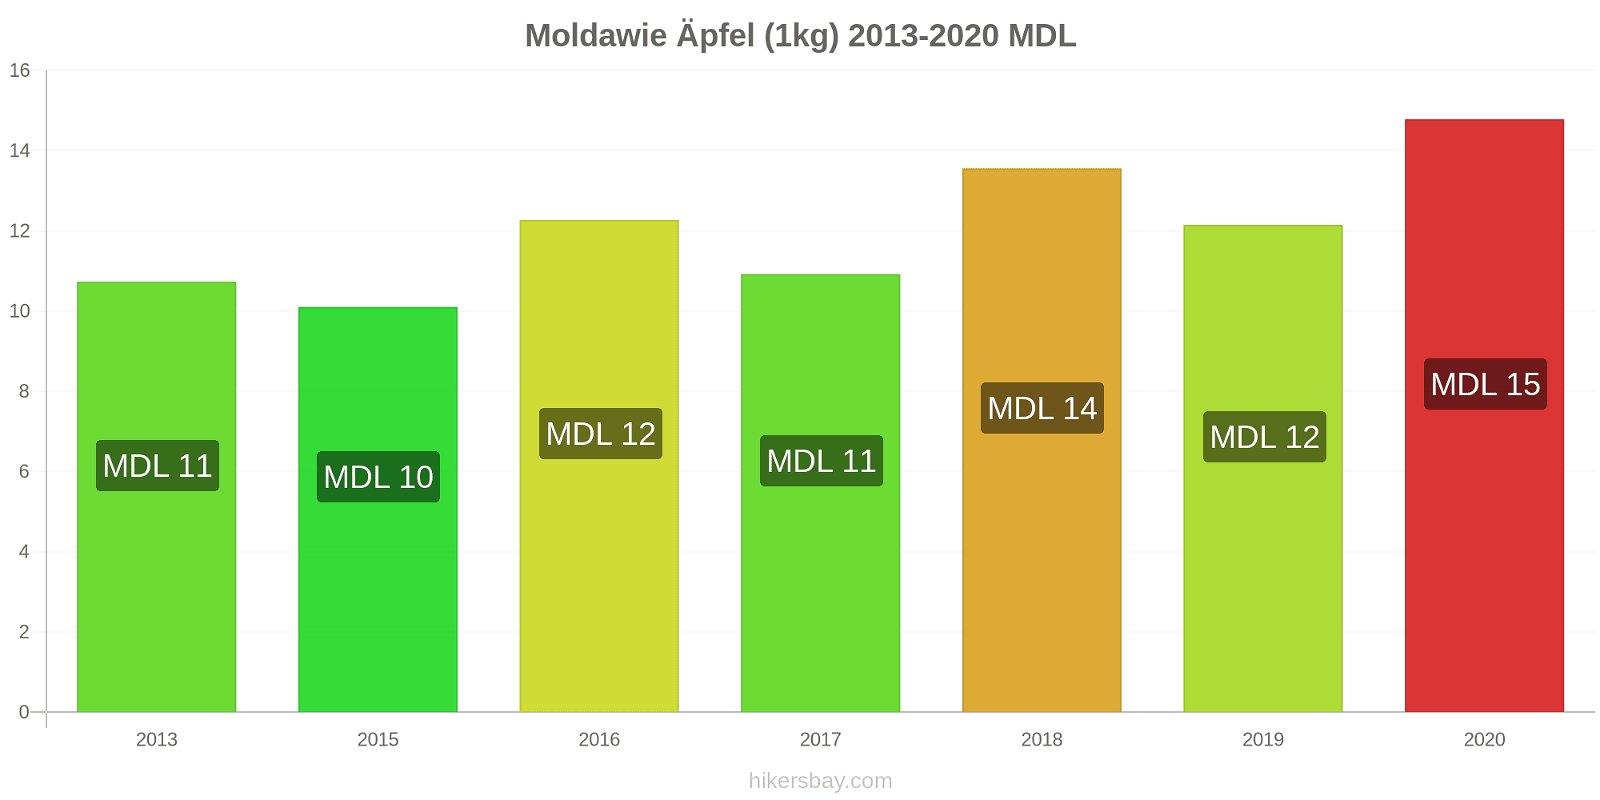 Moldawie Preisänderungen Äpfel (1kg) hikersbay.com